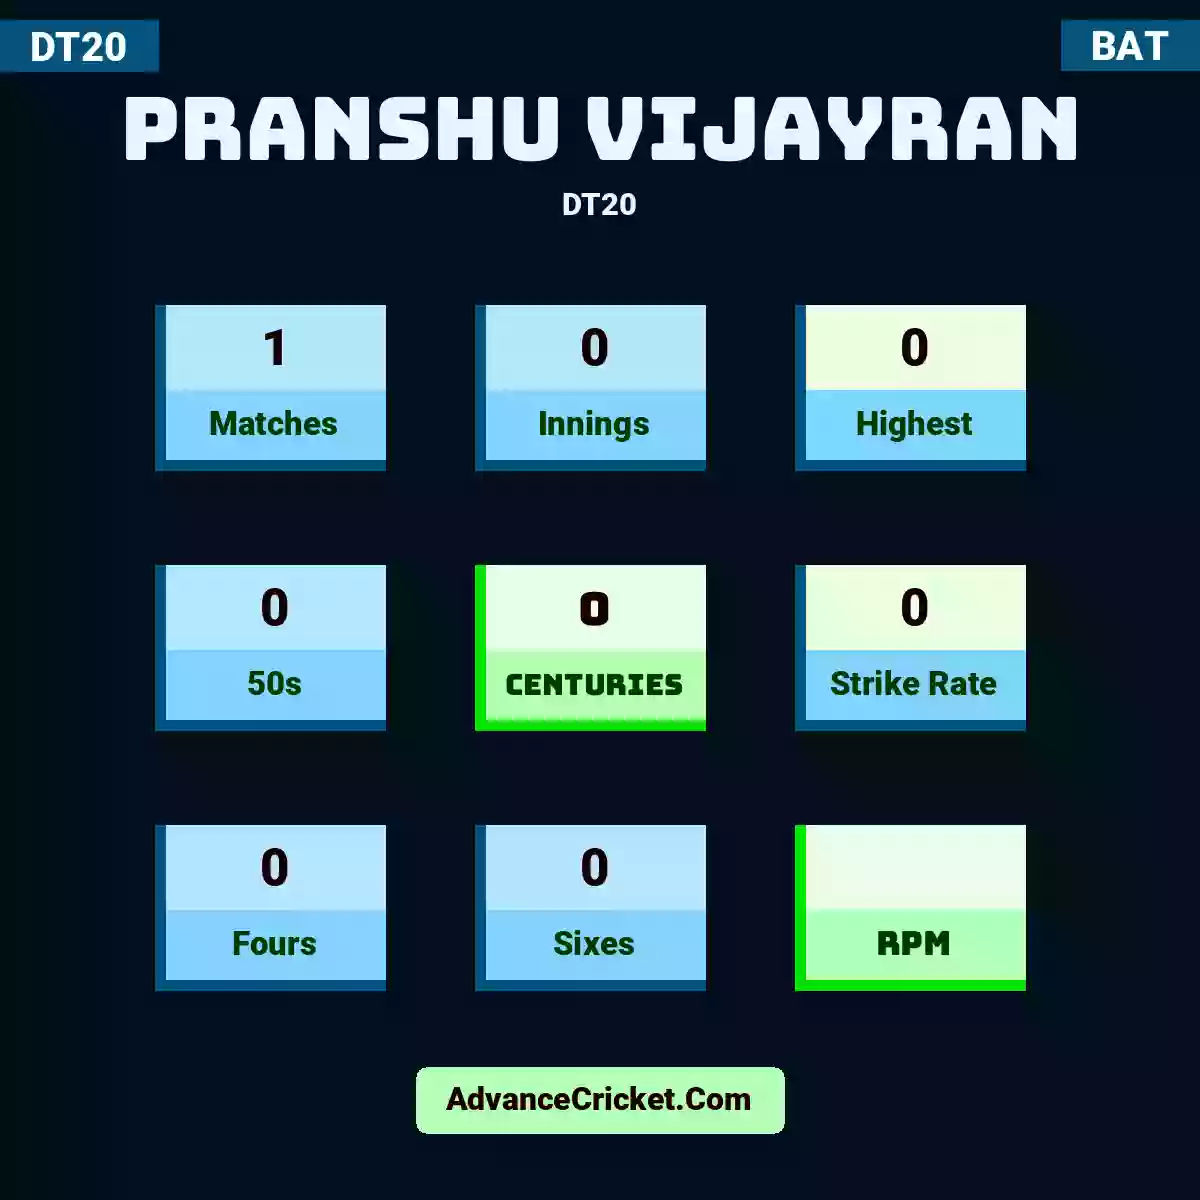 Pranshu Vijayran DT20 , Pranshu Vijayran played 1 matches, scored 0 runs as highest, 0 half-centuries, and 0 centuries, with a strike rate of 0. P.Vijayran hit 0 fours and 0 sixes.